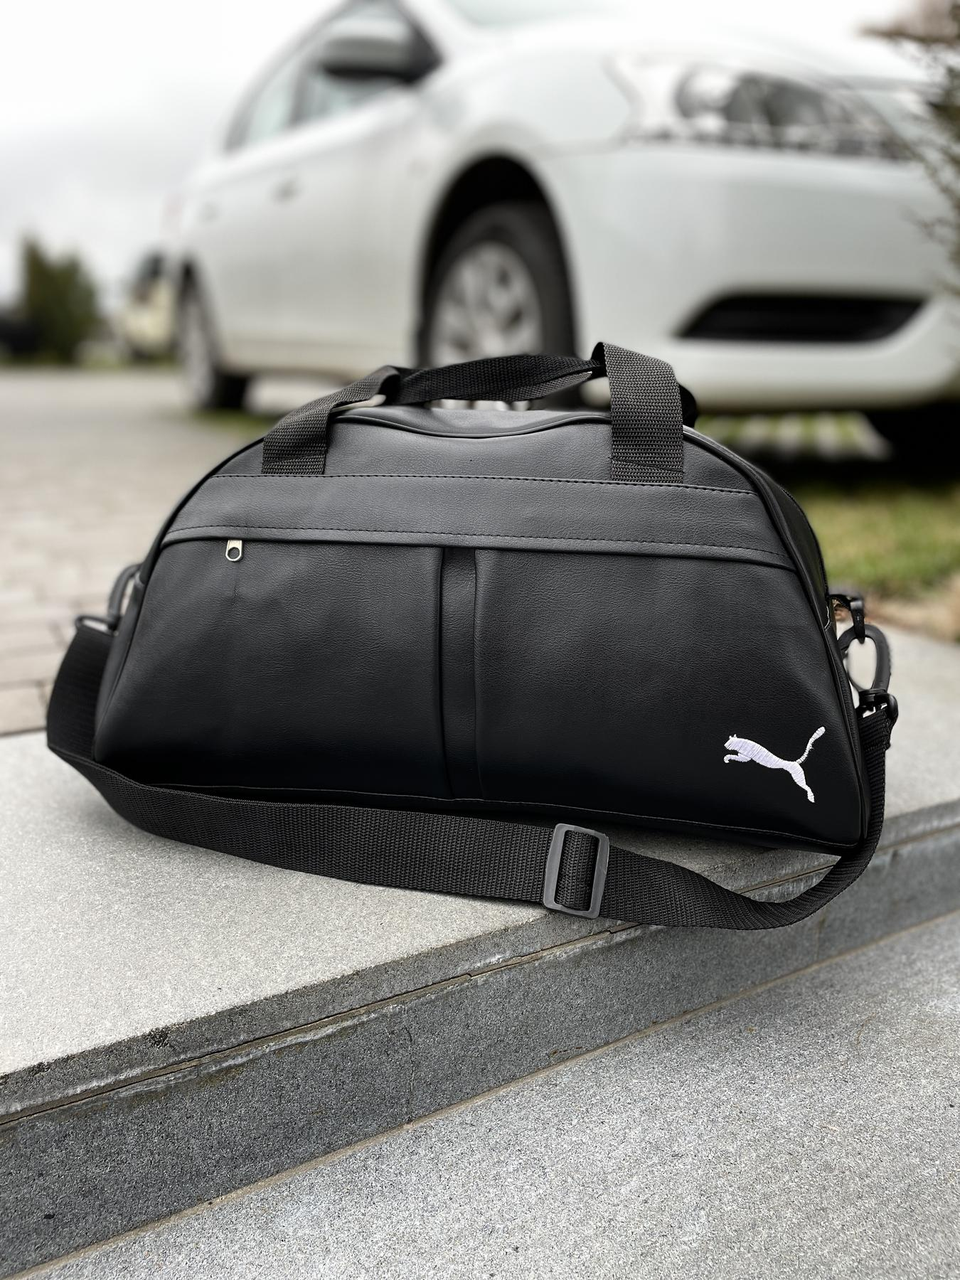 Сумка Puma , сумка для фітнесу,сумка для залу,сумка для поїздок,сумка для спорту,сумка для подорожей